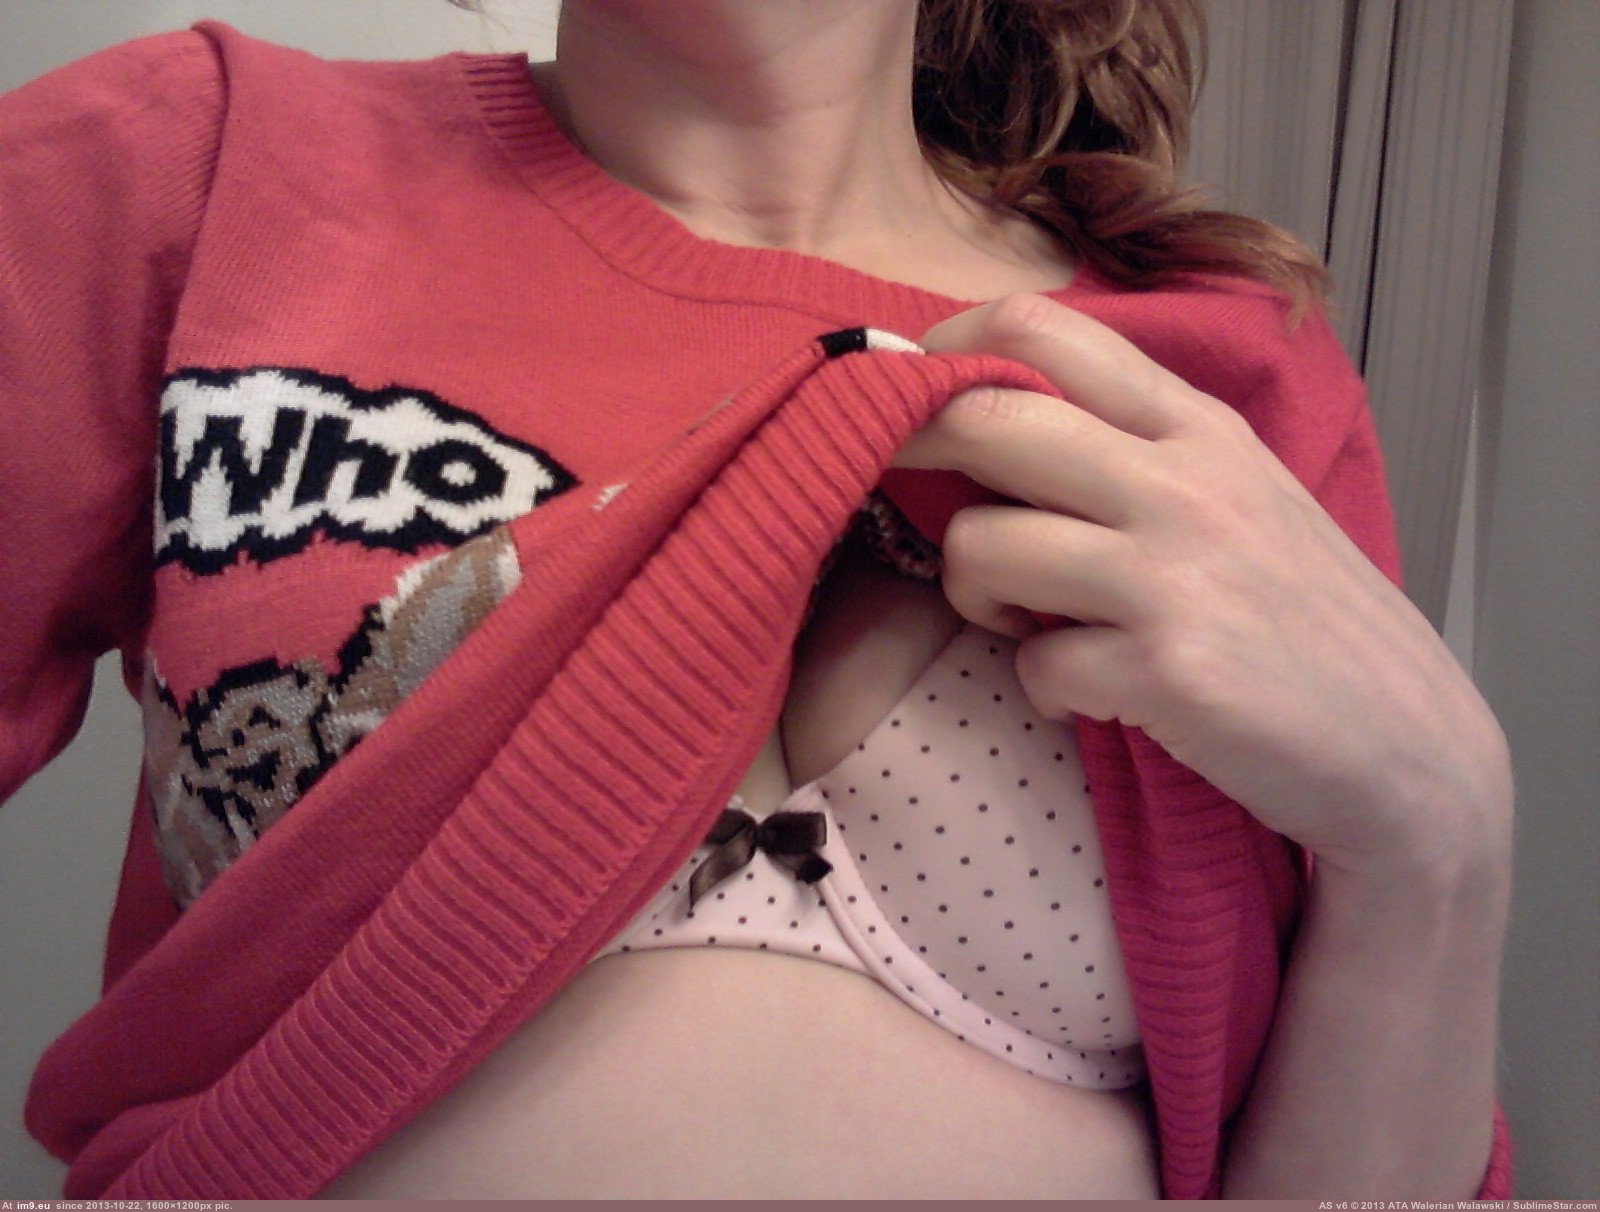 Pic. #Boobs #Favorite #Hilarious #Kitten #Sweater, 298133B – My r